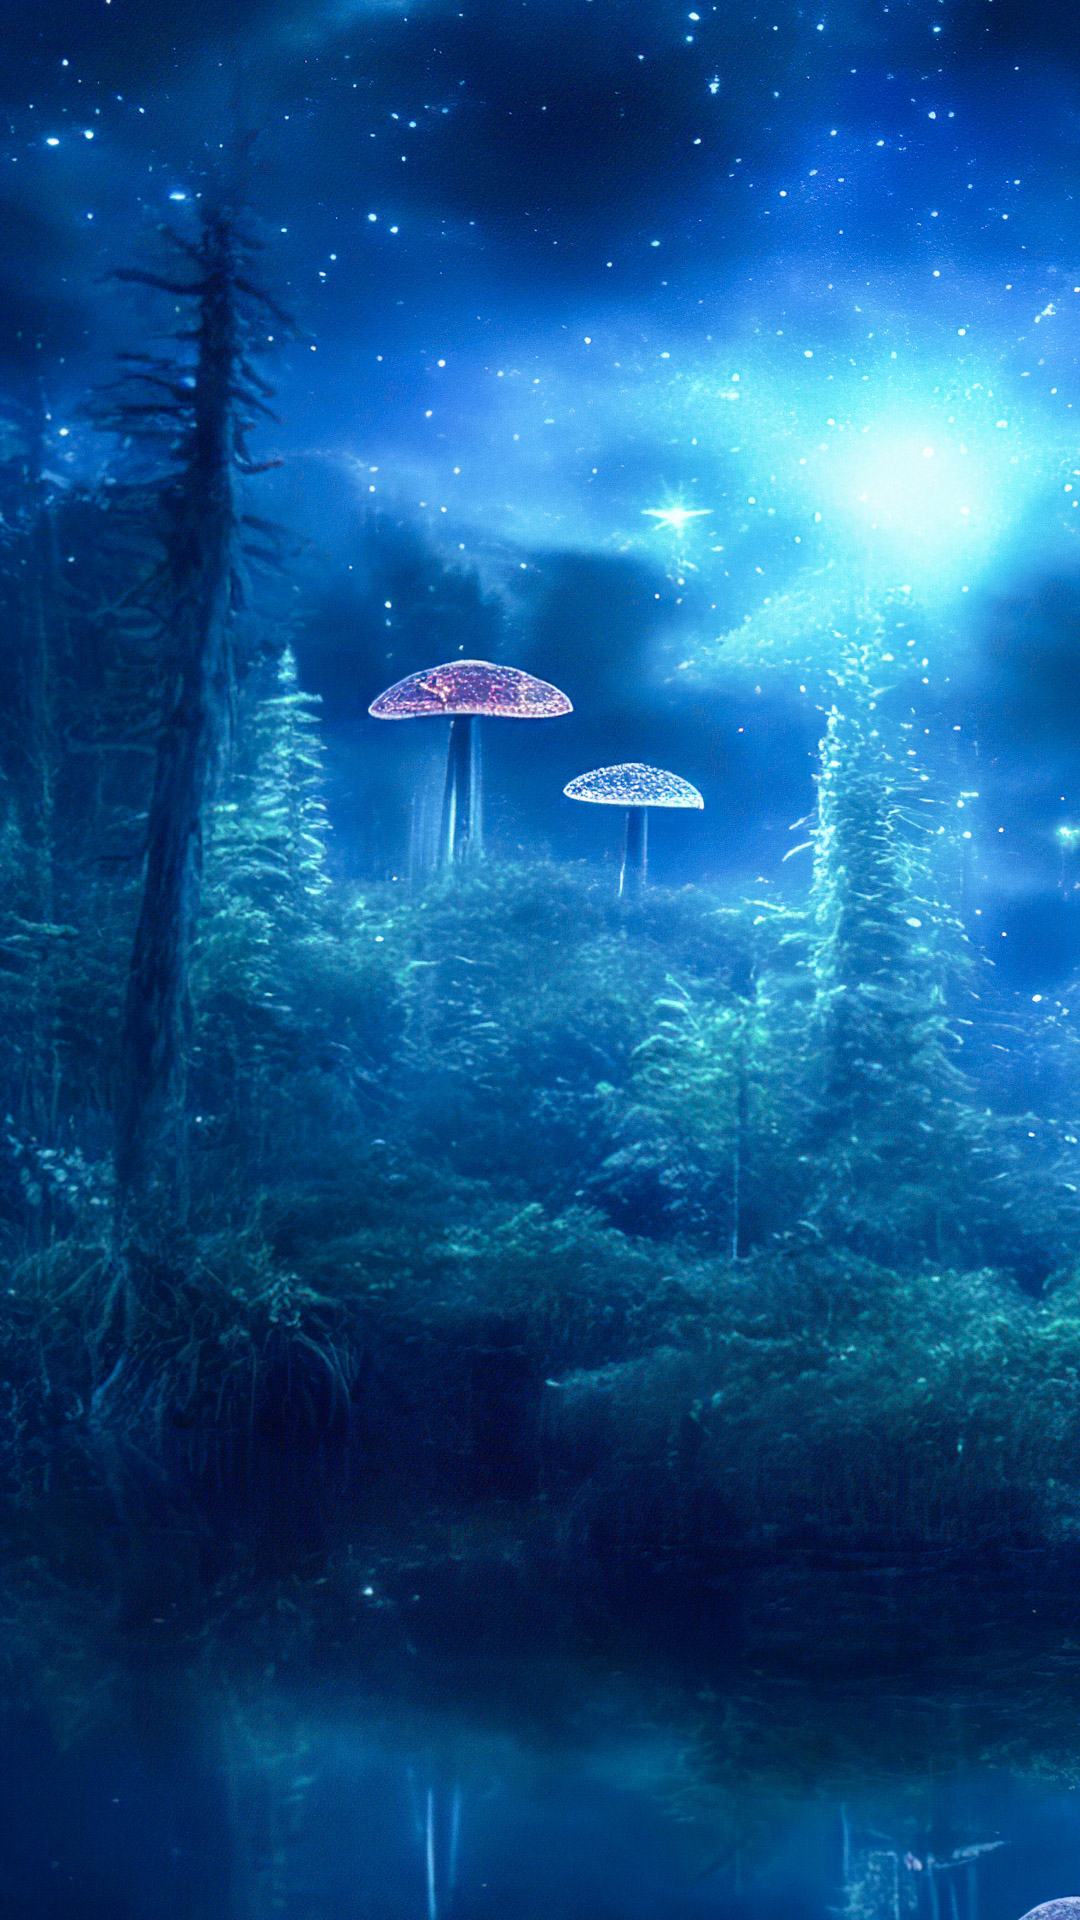 Transformez votre téléphone avec nos fonds d'écran de paysage en HD, illustrant une clairière mystique avec des champignons bioluminescents, créant une scène enchantée et surnaturelle.